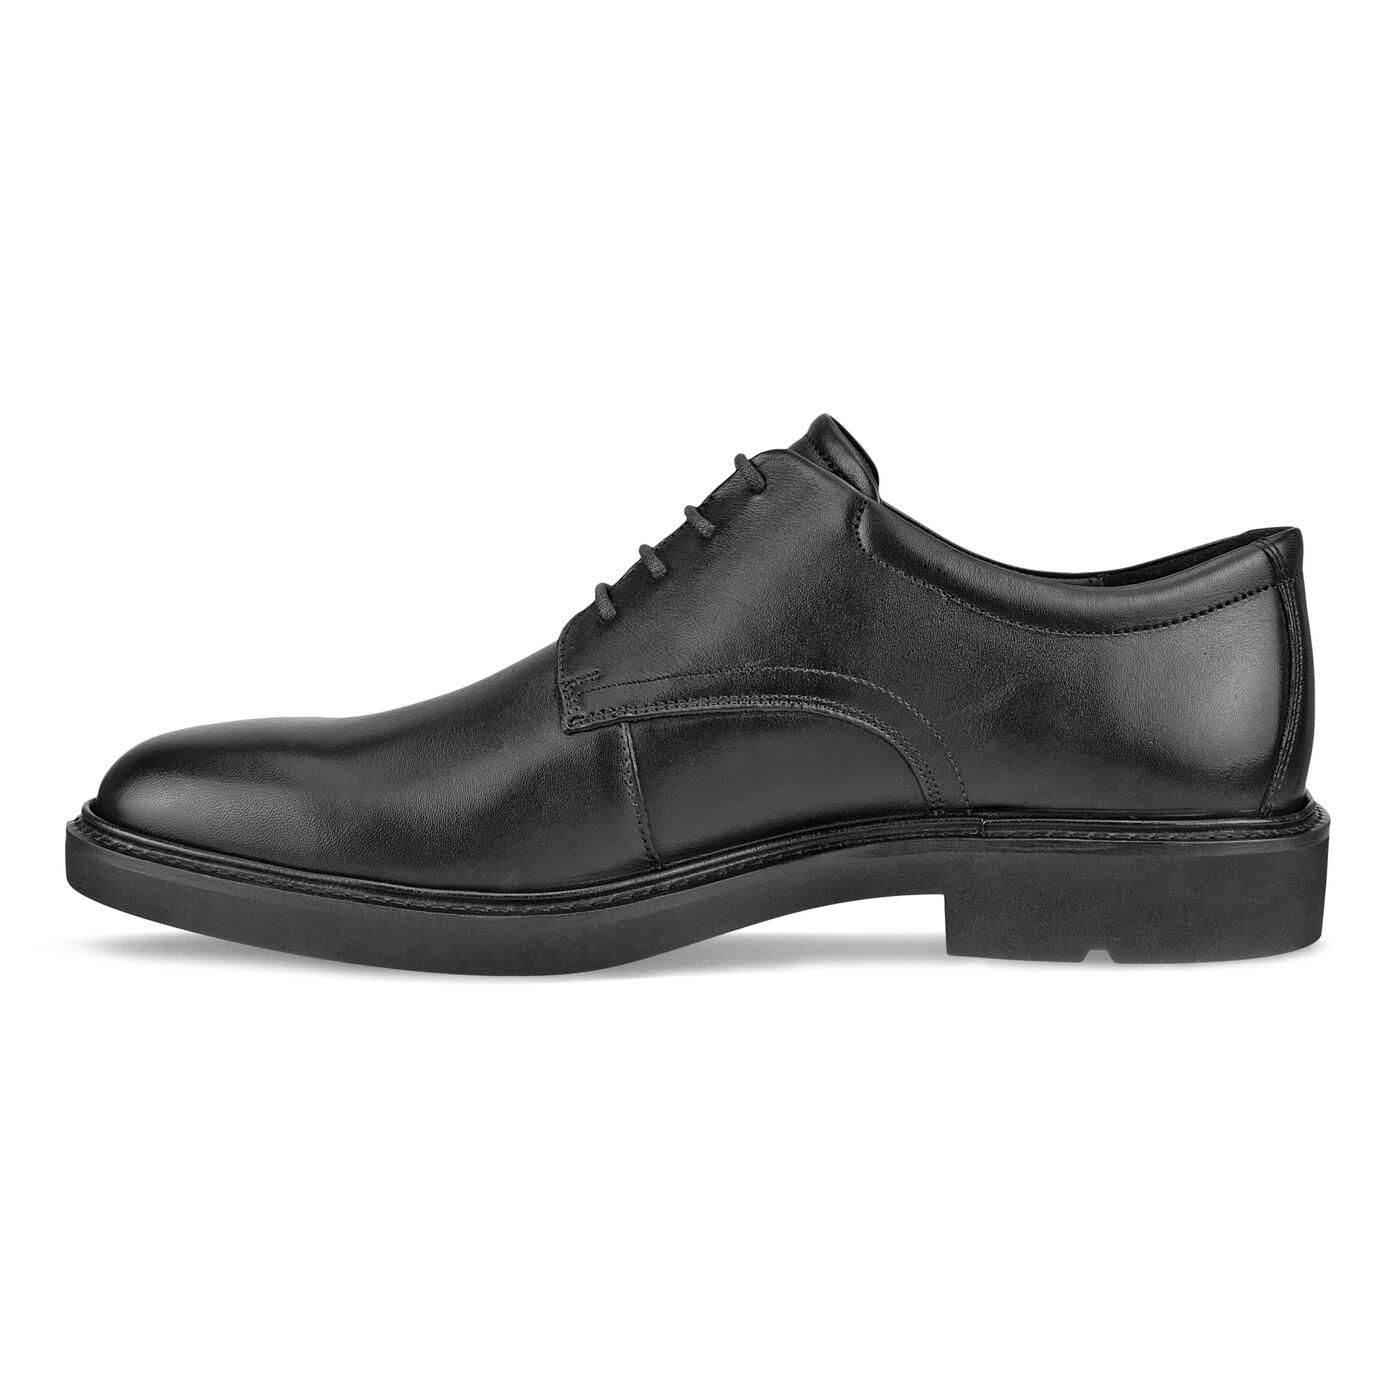 ECCO MEN'S METROPOLE LONDON DERBY SHOE | Official ECCO® Shoes